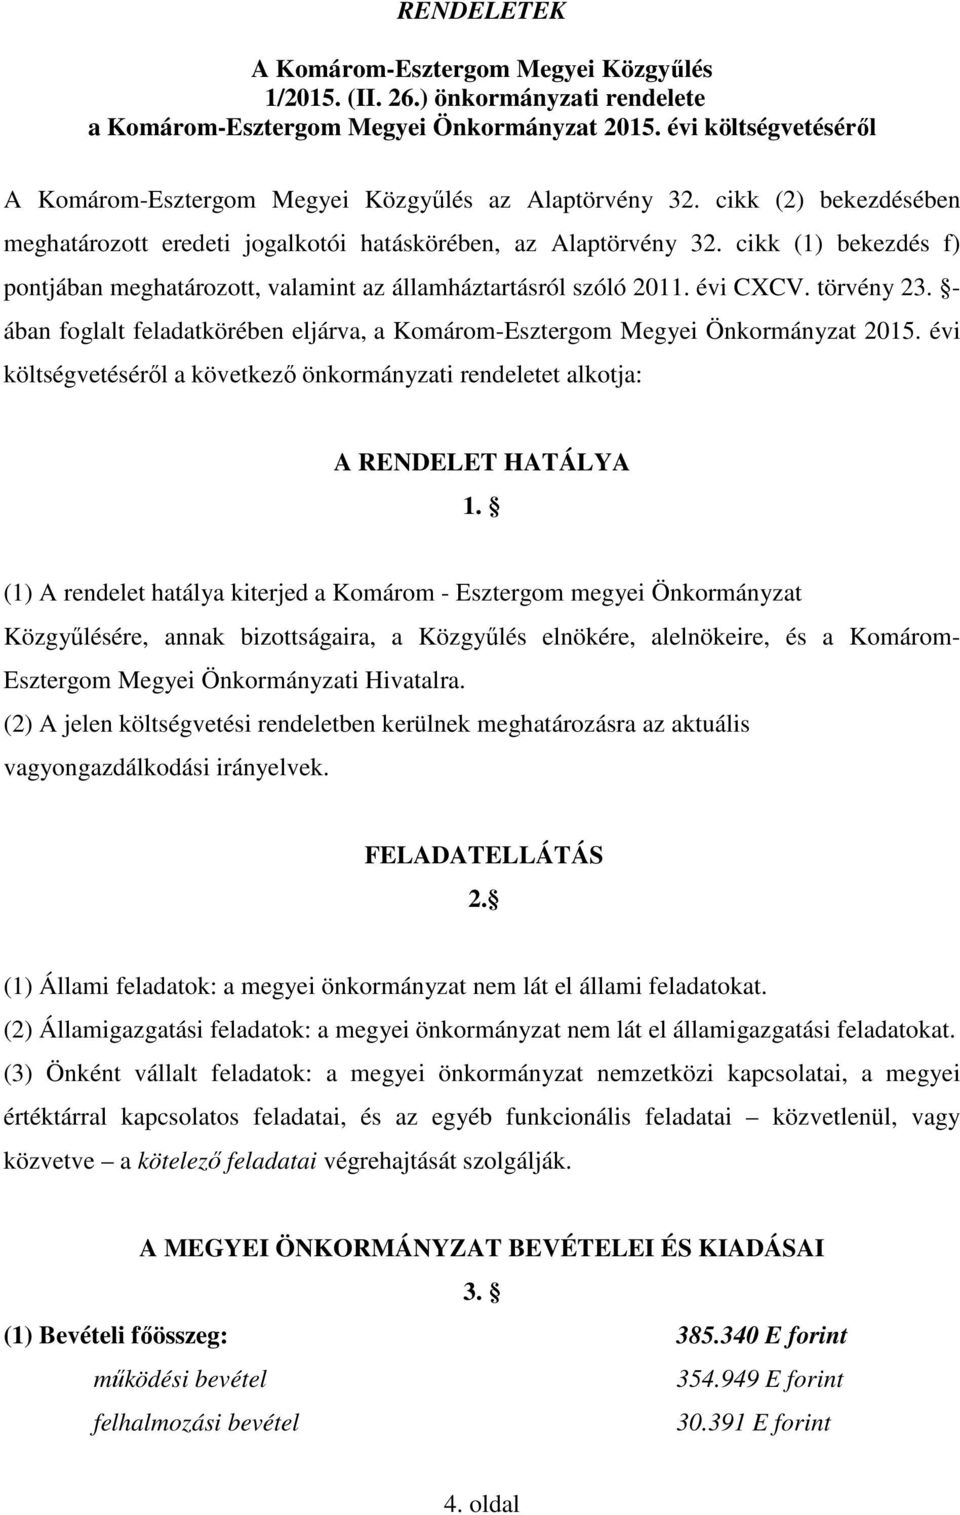 cikk (1) bekezdés f) pontjában meghatározott, valamint az államháztartásról szóló 2011. évi CXCV. törvény 23. - ában foglalt feladatkörében eljárva, a Komárom-Esztergom Megyei Önkormányzat 2015.